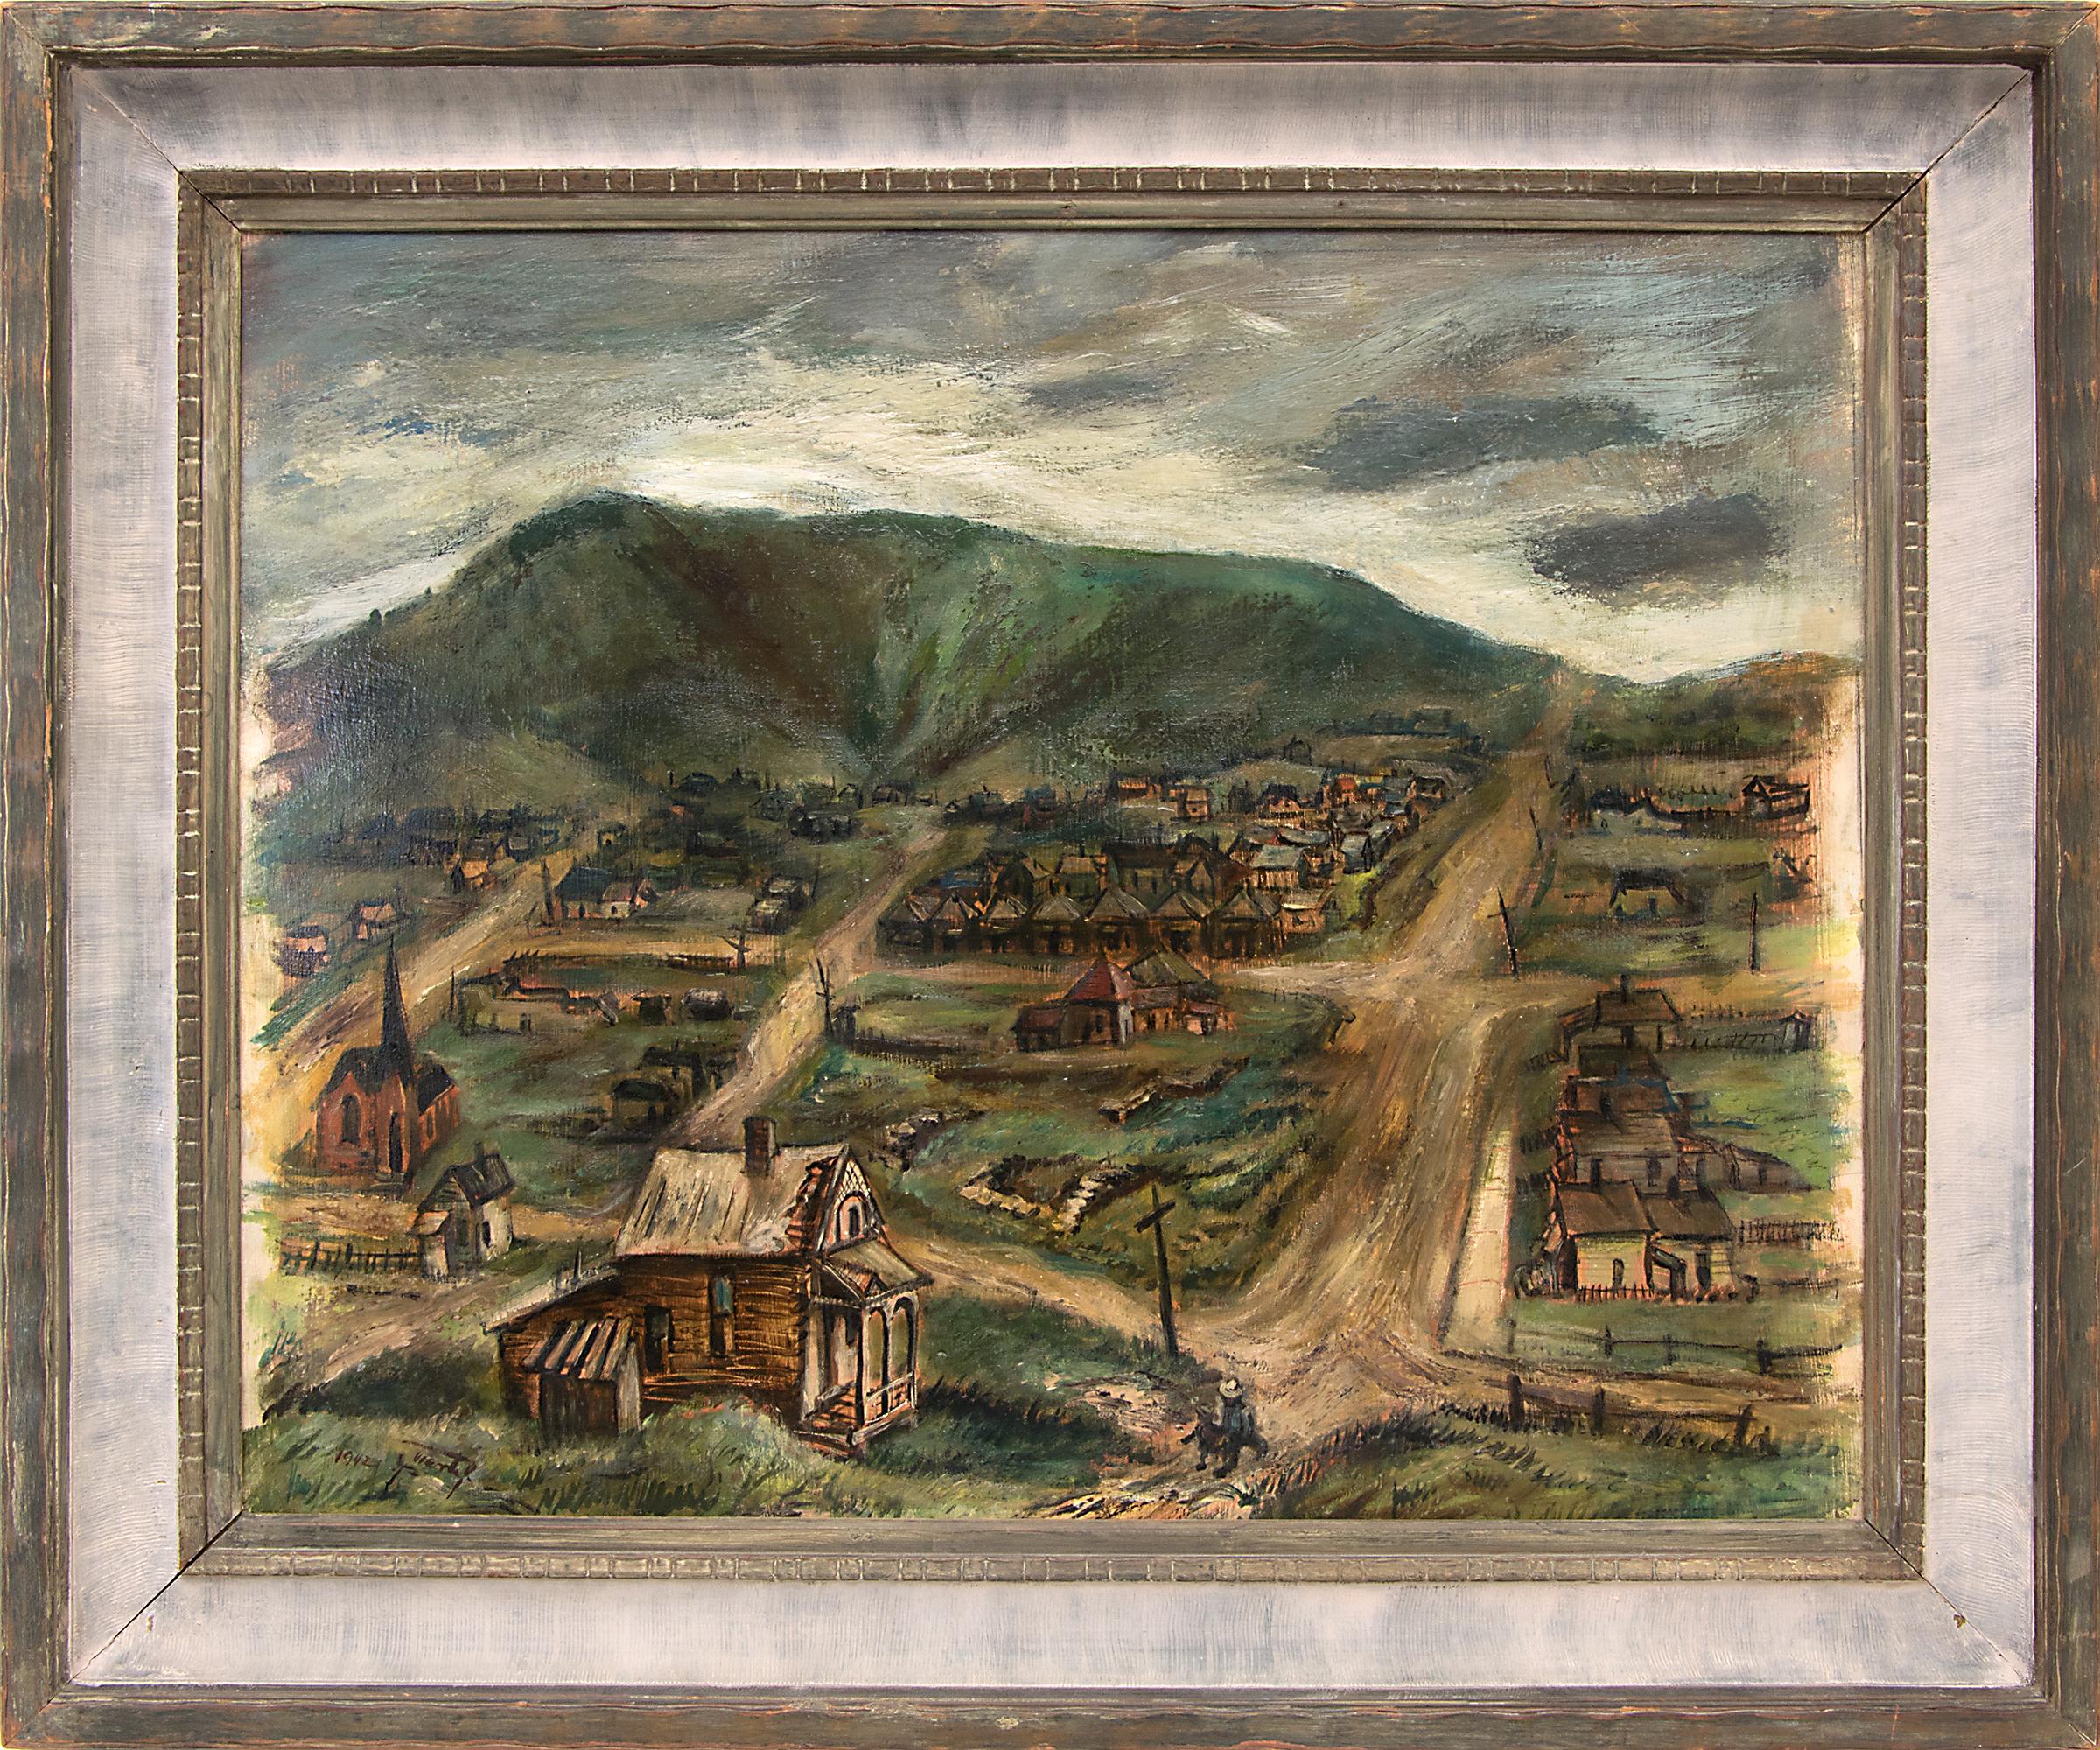 Victor, Colorado, paysage de montagne moderniste des années 1940 avec ville et ville minier